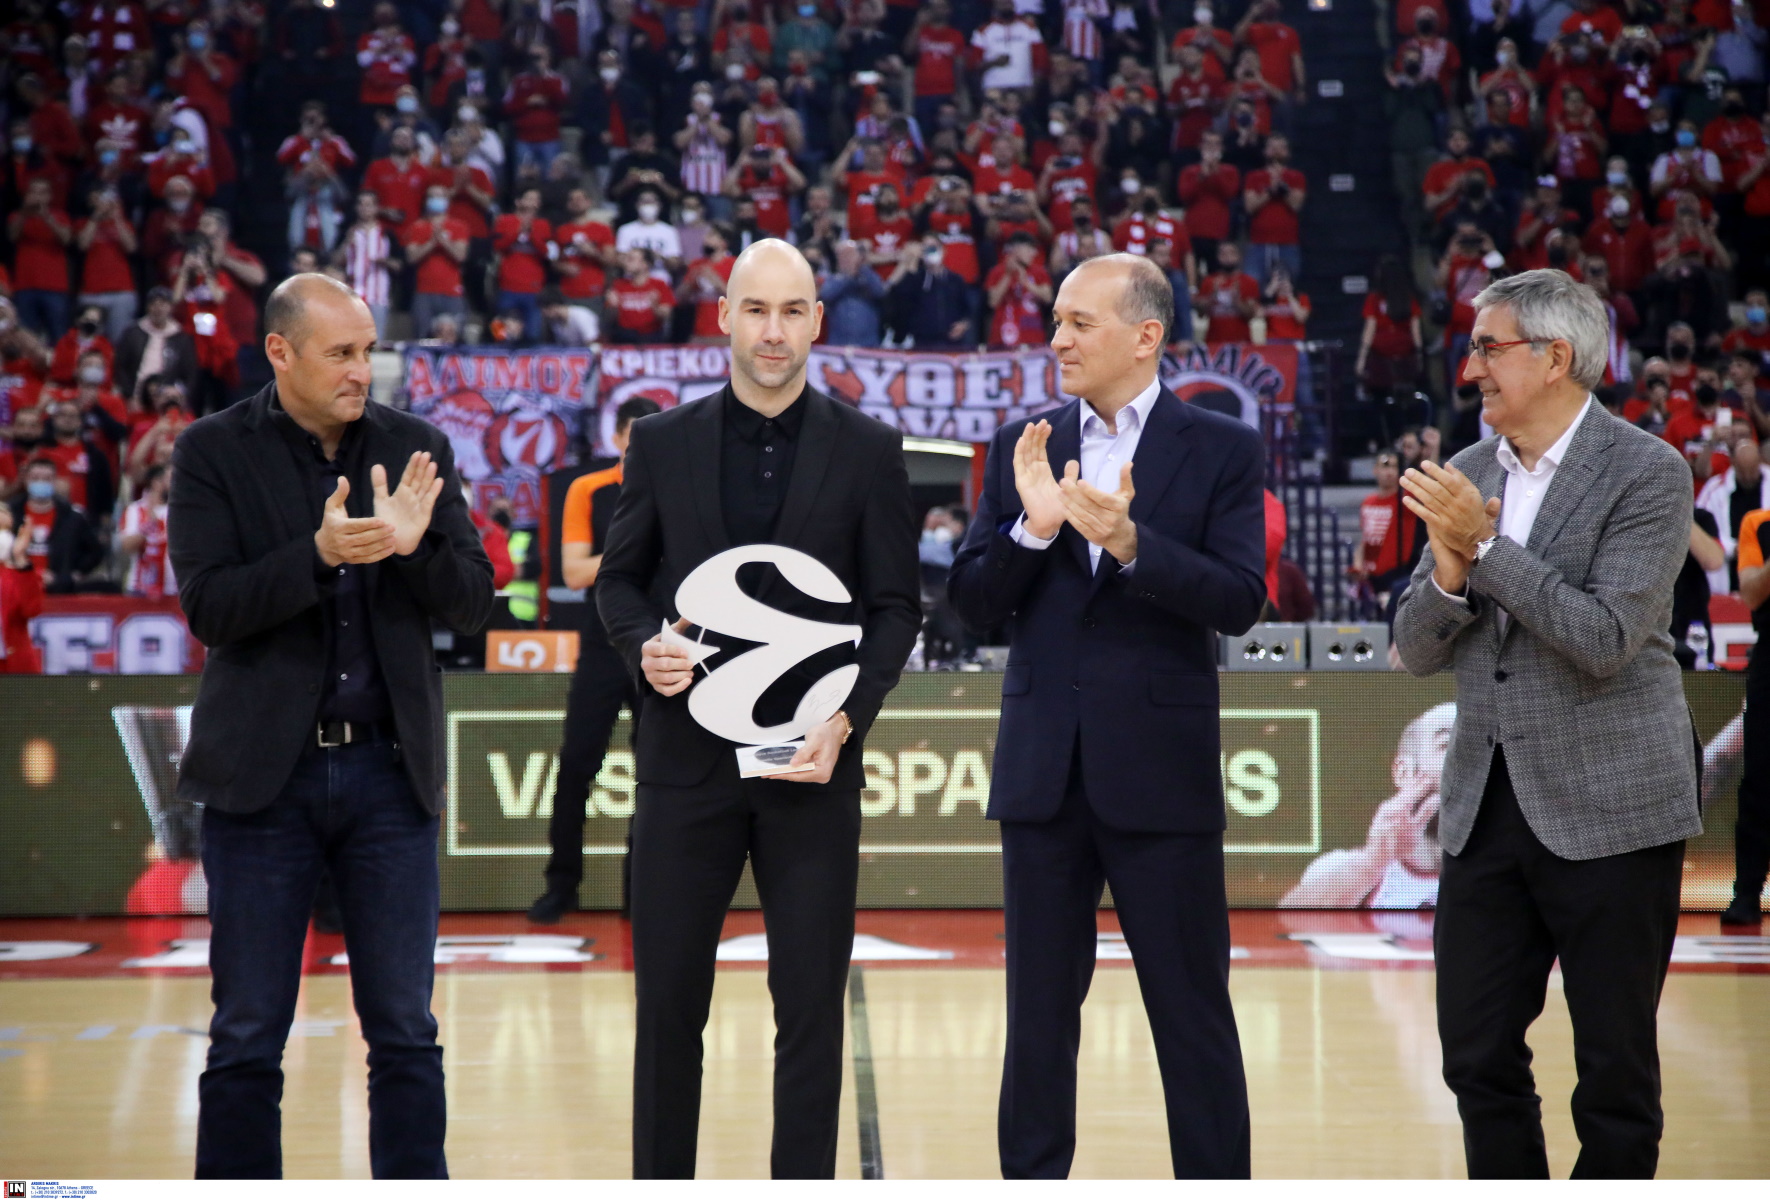 Βασίλης Σπανούλης: Έγινε legend της Euroleague κι έδωσε σύνθημα πρόκρισης για τον Ολυμπιακό